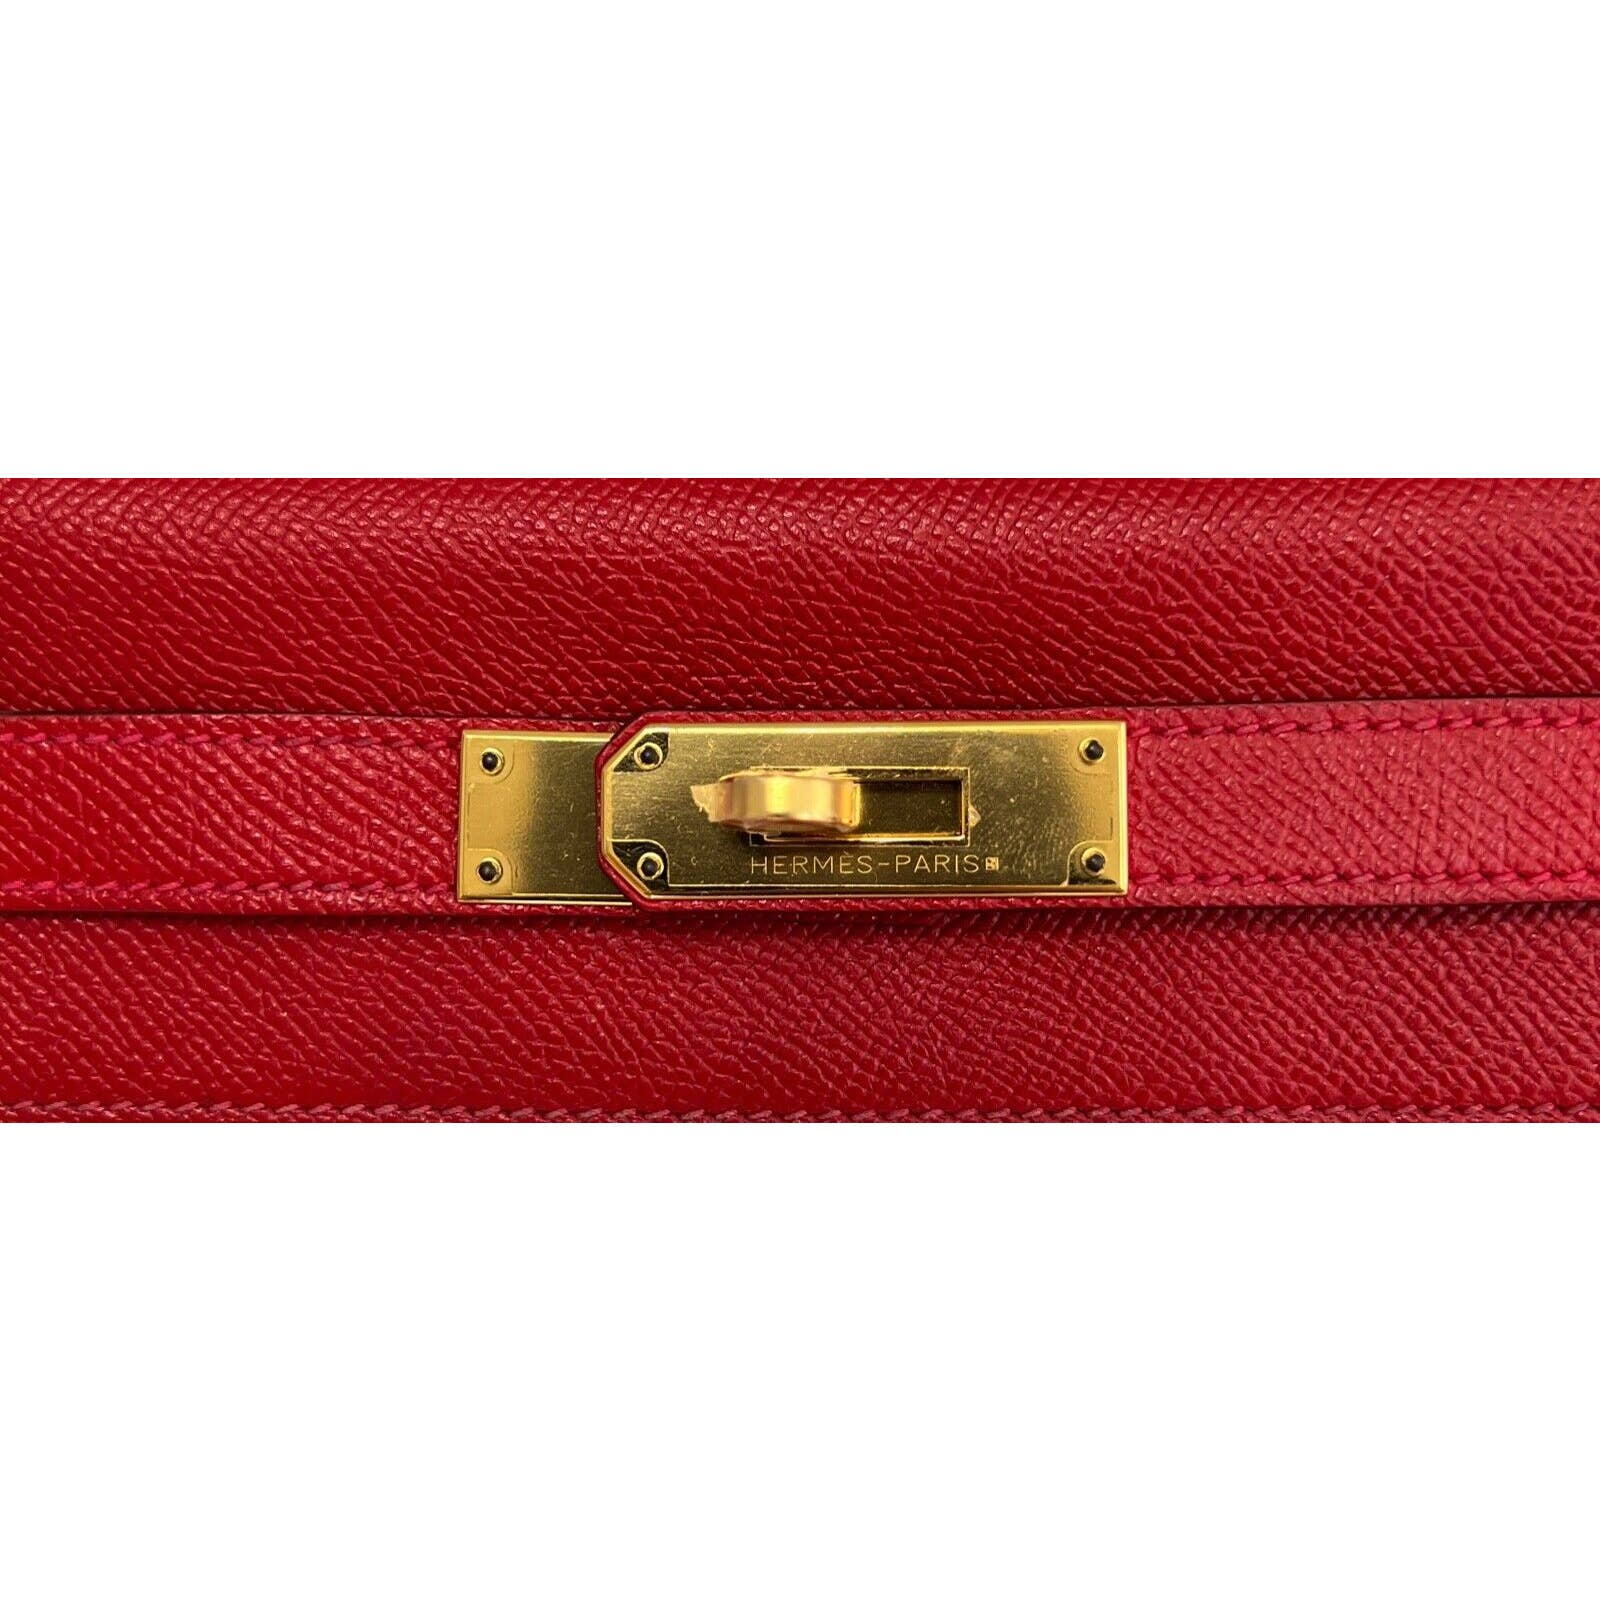 Hermès Kelly HSS 28 Rouge Casaque/Etoupe Sellier Epsom Brushed